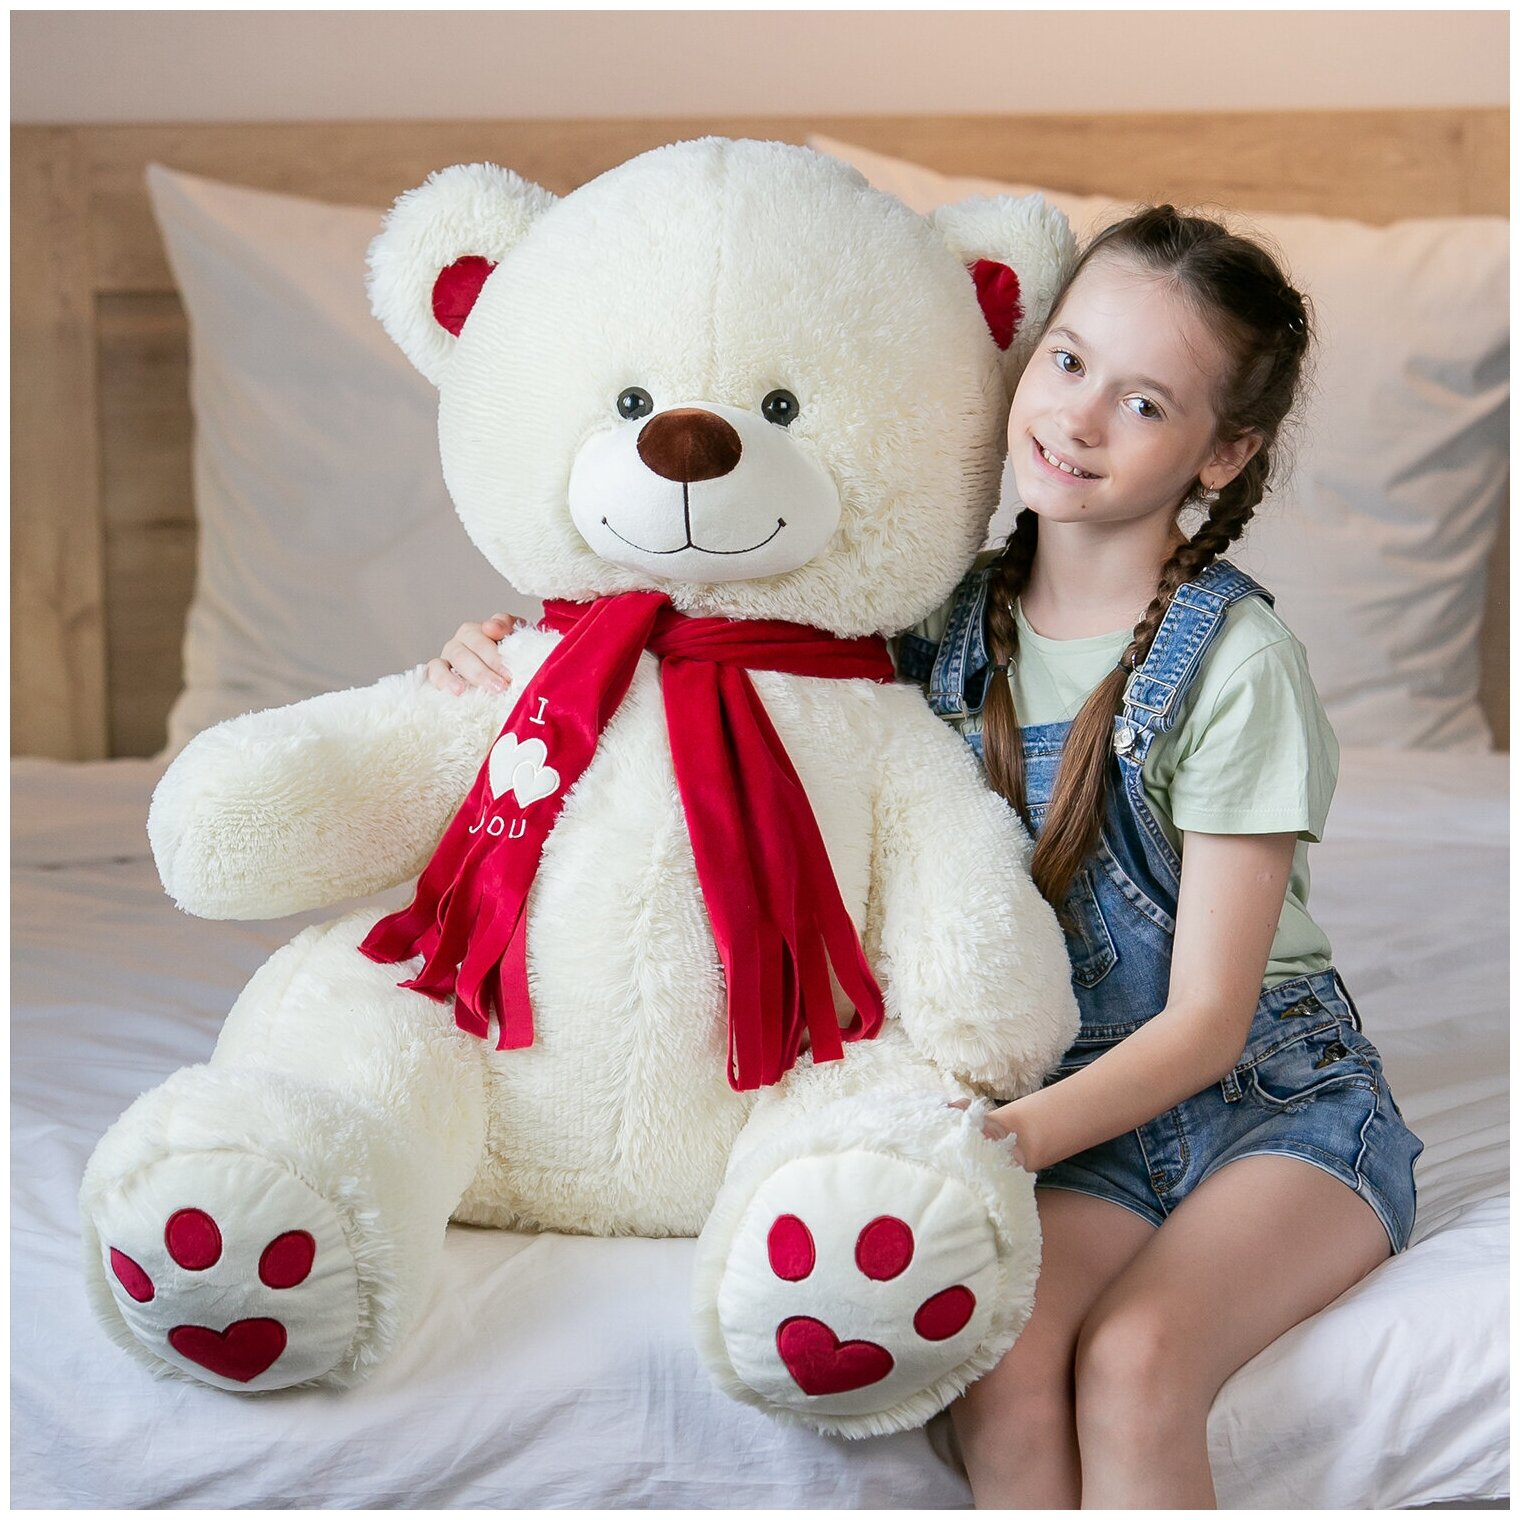 Мягкая игрушка огромный плюшевый медведь Кельвин 120 см, большой мишка, подарок девушке, ребенку на день рождение, цвет латте